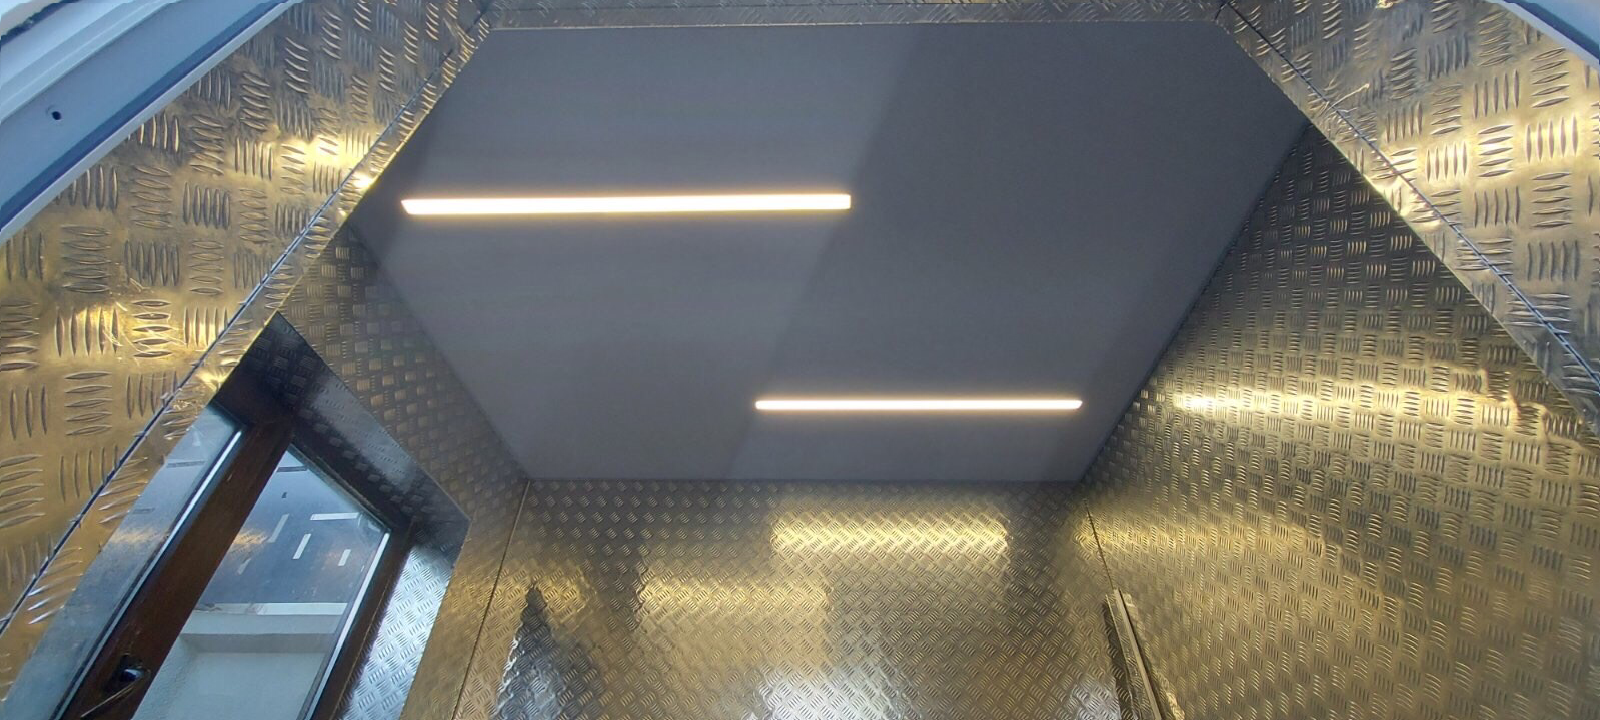 Фото матовый натяжной потолок в с.у со световыми линиями